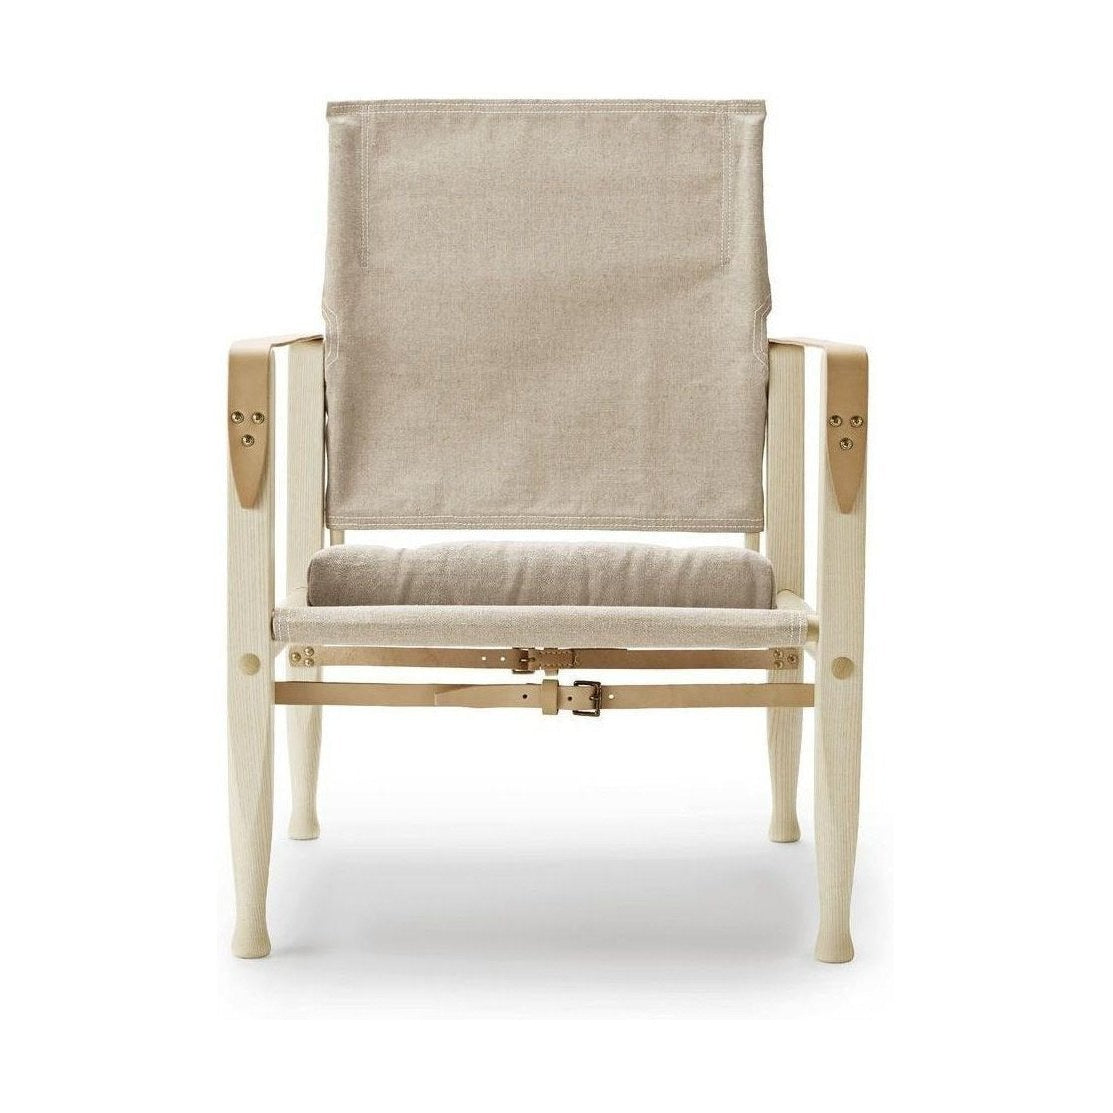 Carl Hansen KK47000 Safari -stol, oljad aska/naturlig